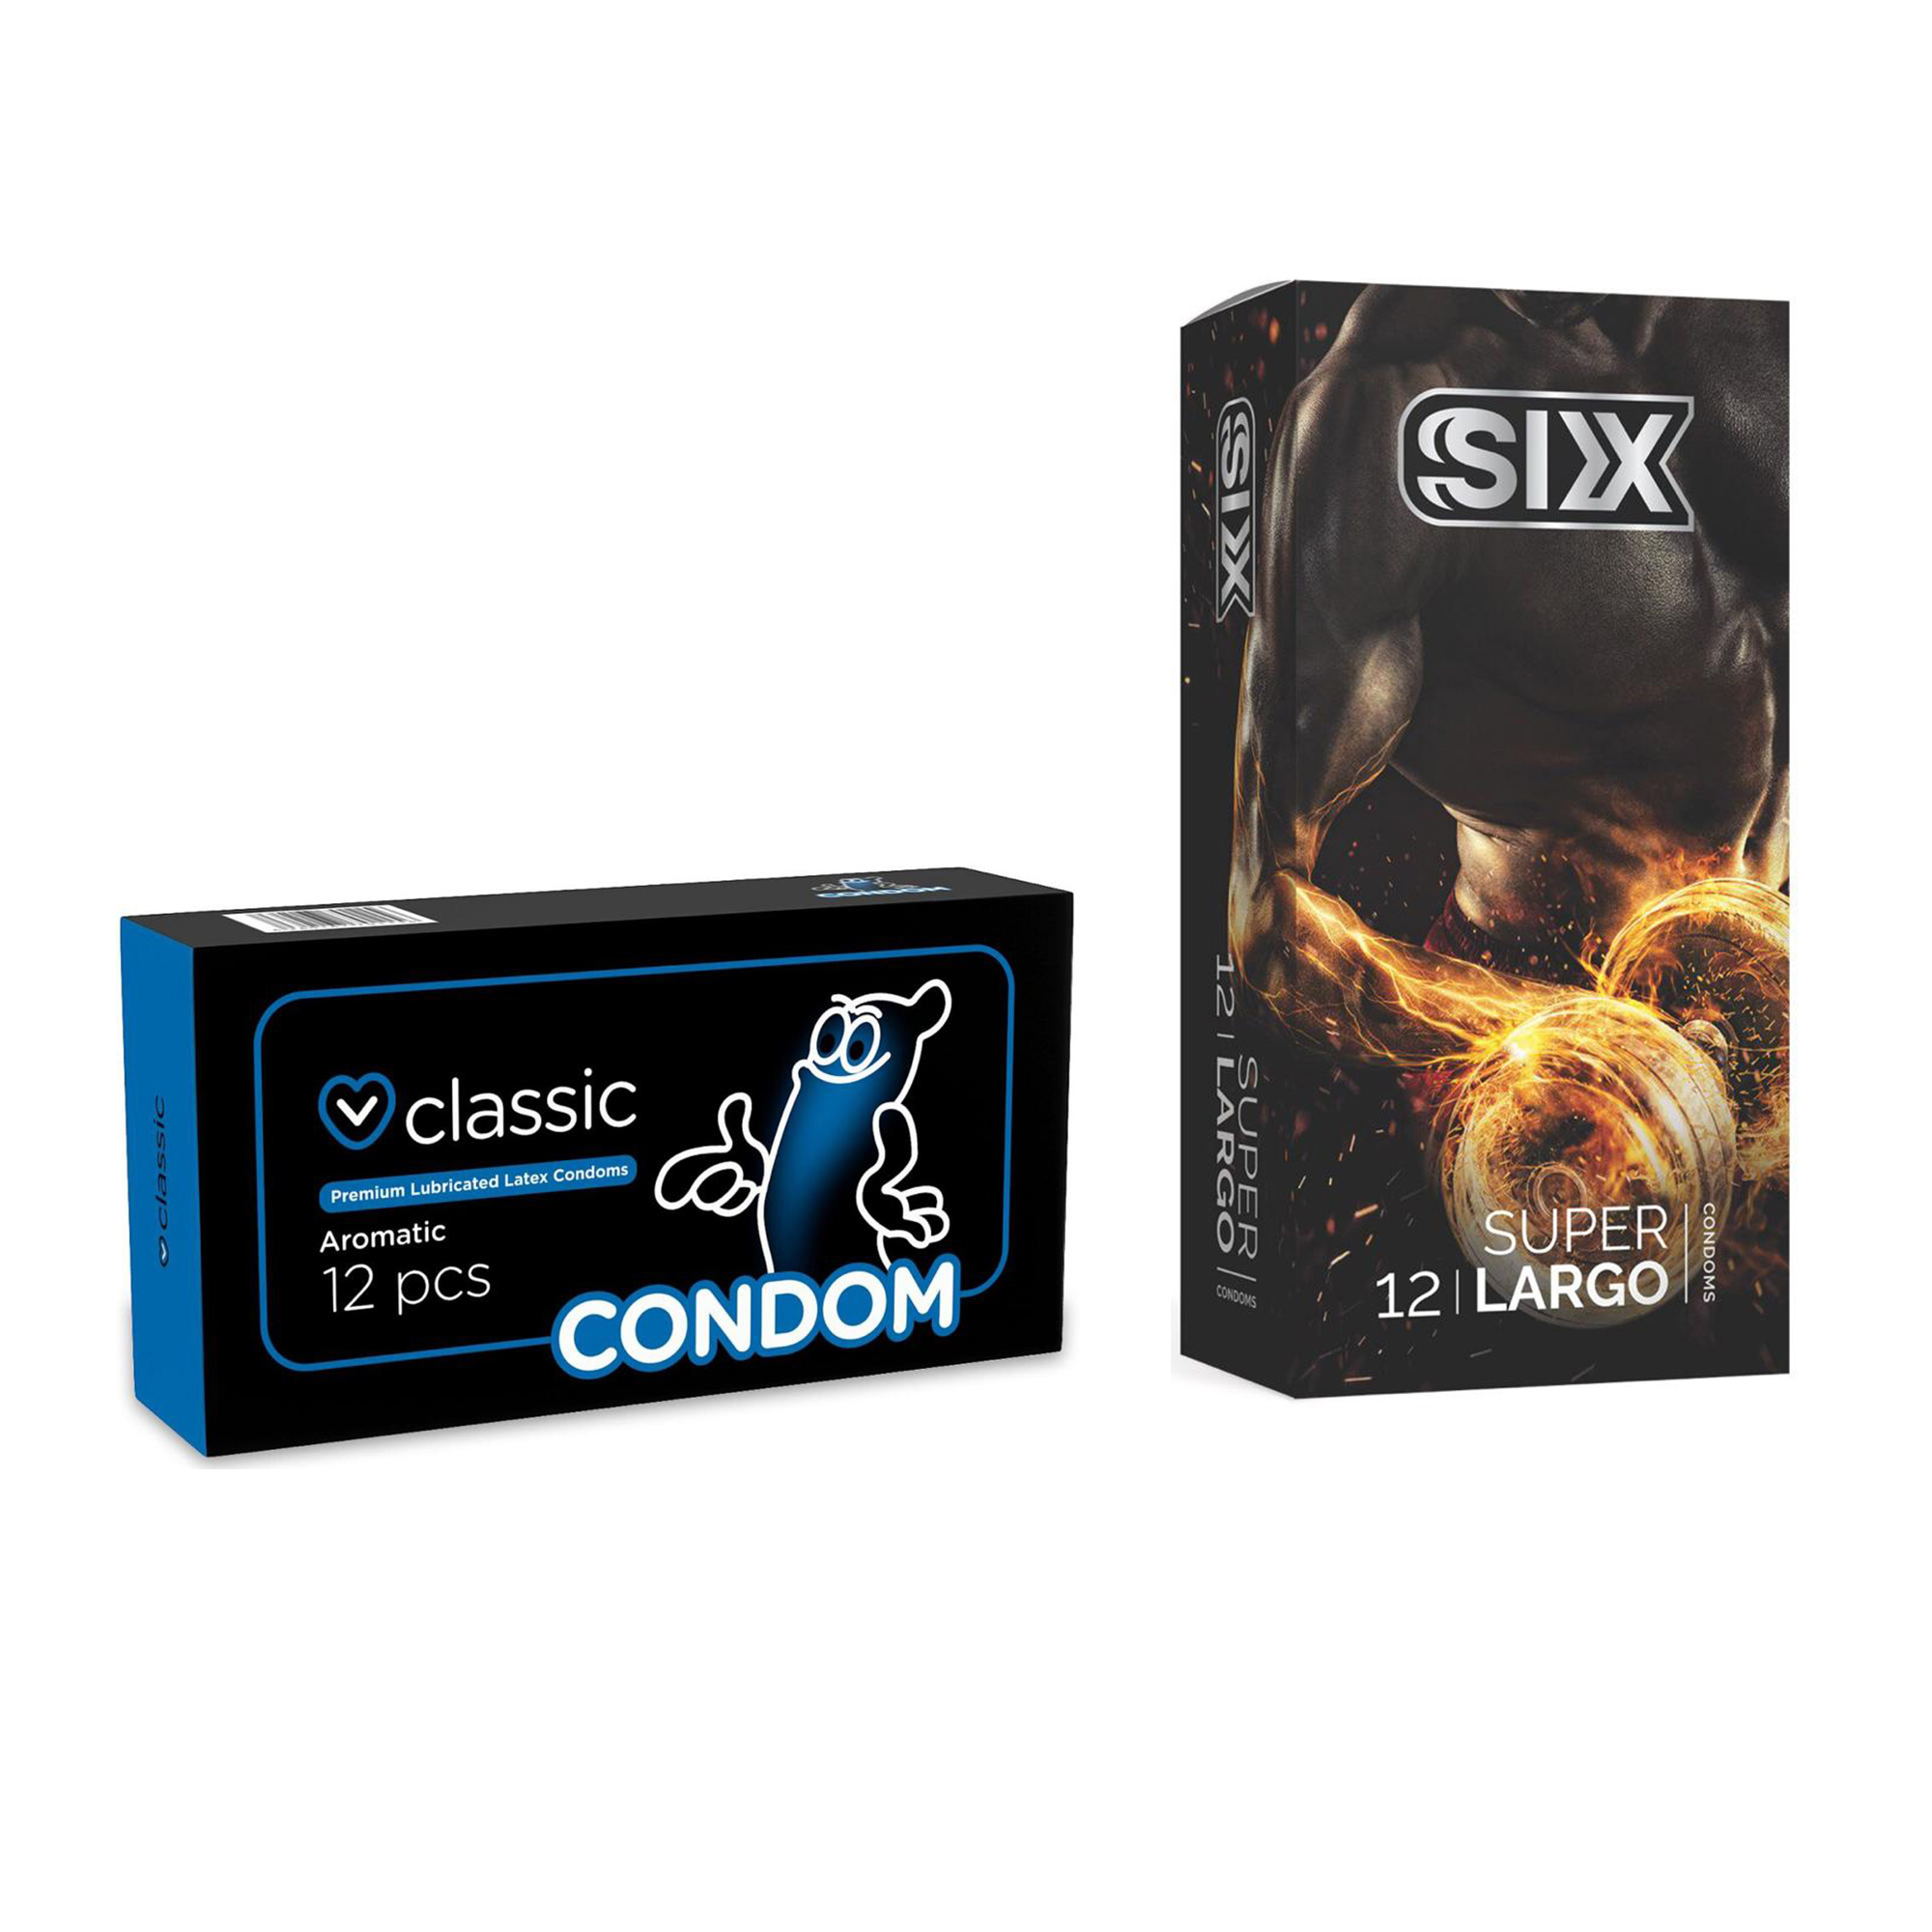 کاندوم سیکس مدل Super Largo بسته 12 عددی به همراه کاندوم کاندوم مدل Classic بسته 12 عددی